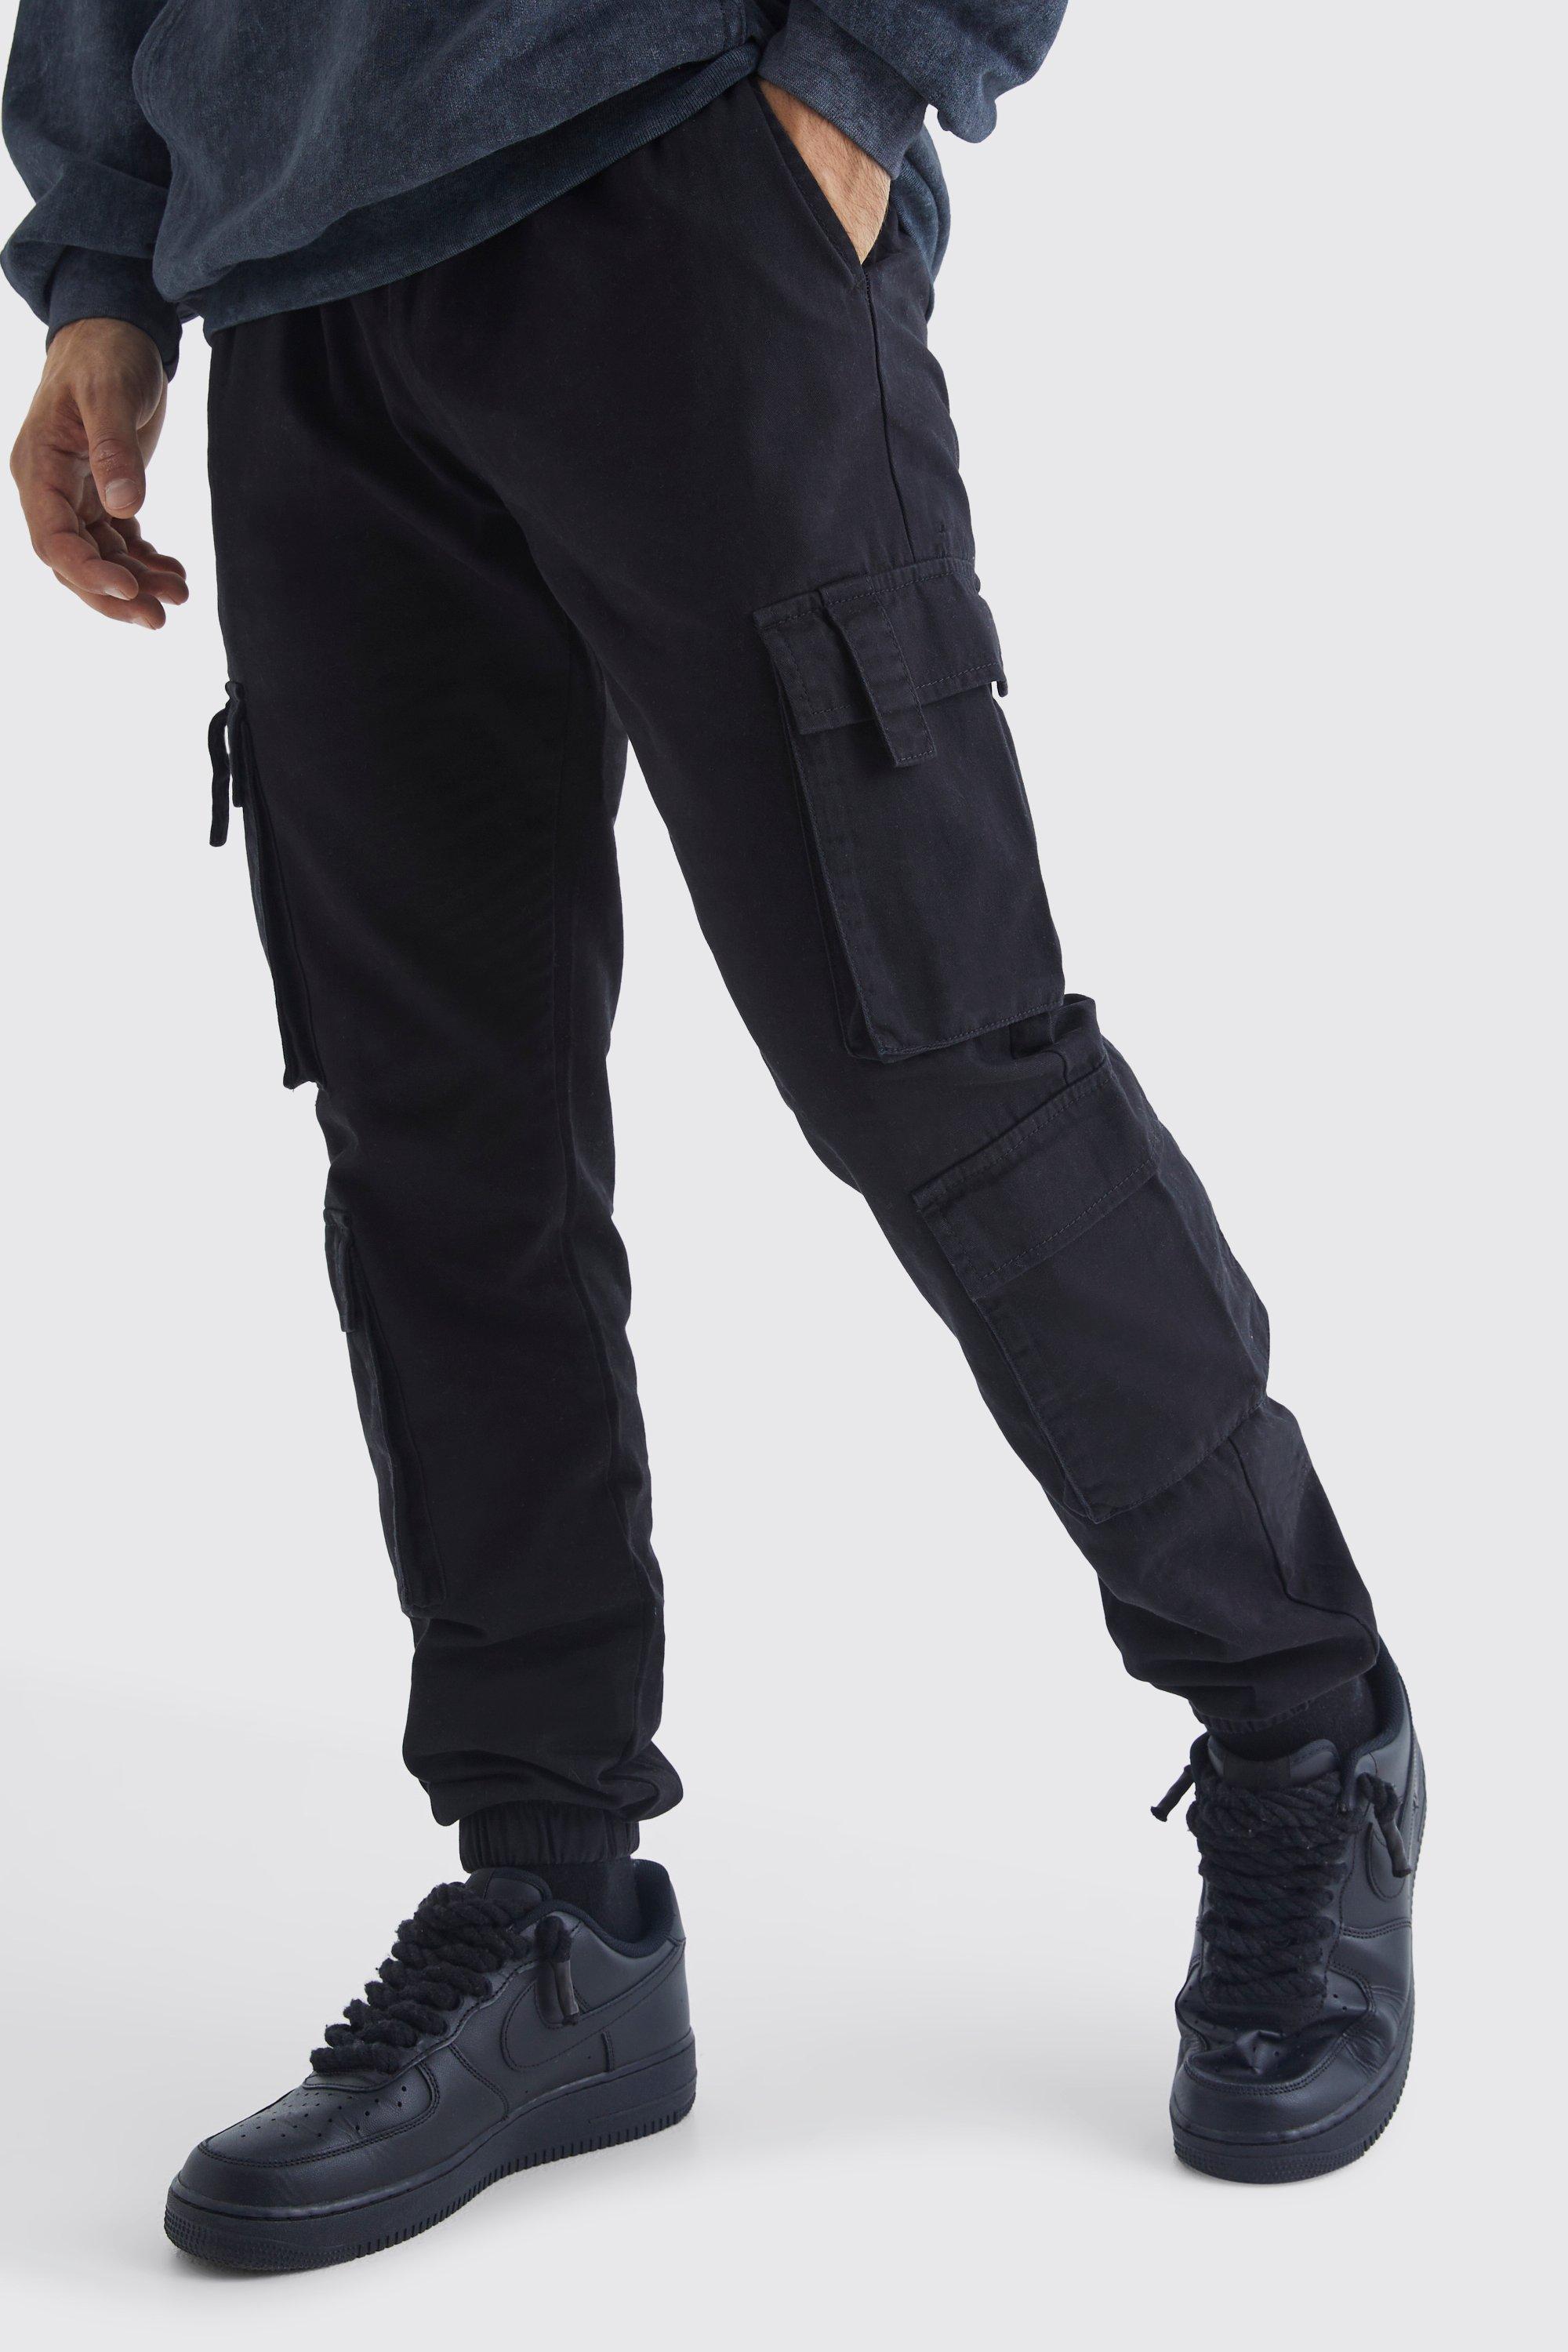 Image of Pantaloni tuta Slim Fit con tasche Cargo e vita elasticizzata, Nero